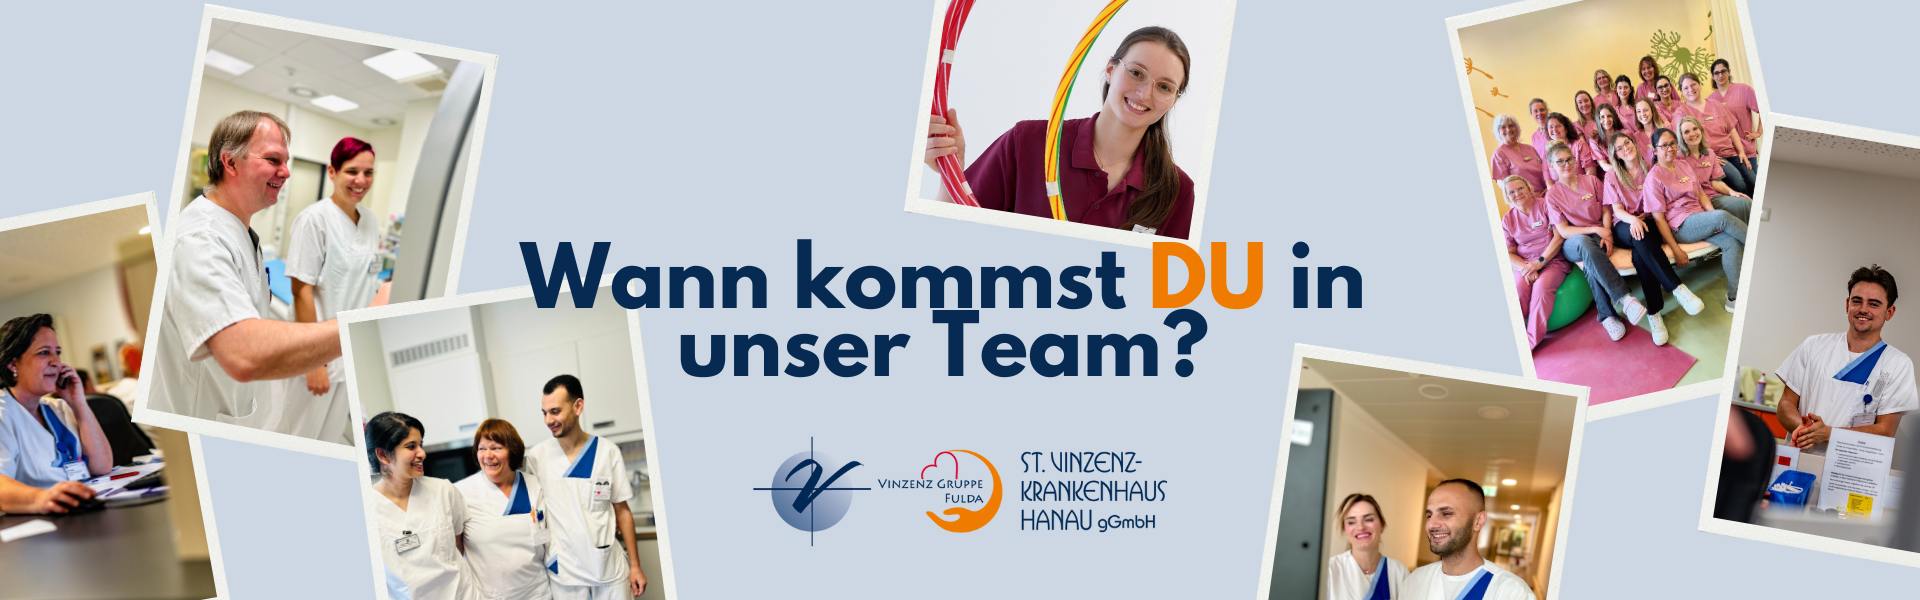 Wann kommst du in unser Team? Mitarbeit und Karriere im St. Vinzenz-Krankenhaus Hanau